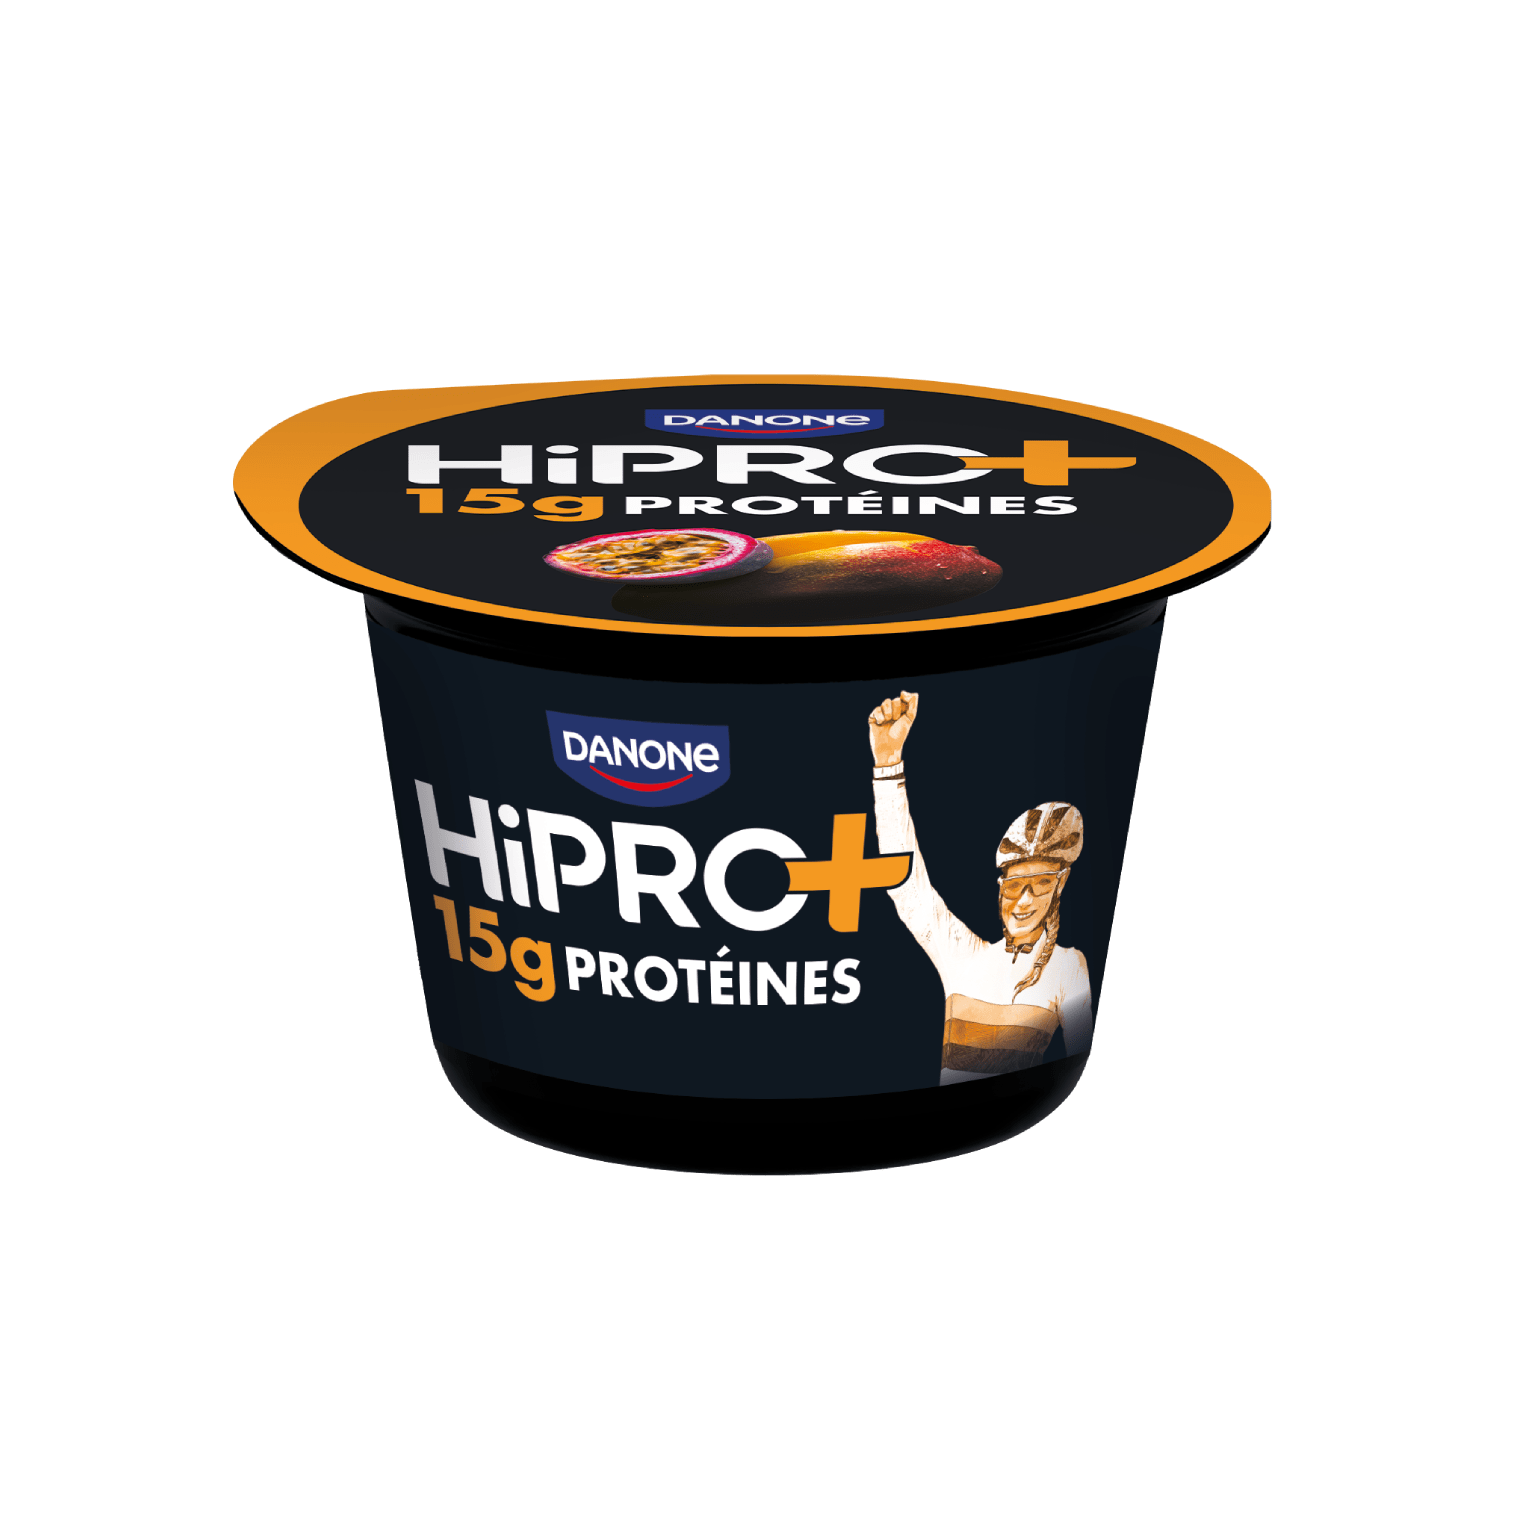 Nouvelle gamme en édition limitée : HiPRO+ mangue-passion, en pot avec 15g de protéines et sans matières grasses.